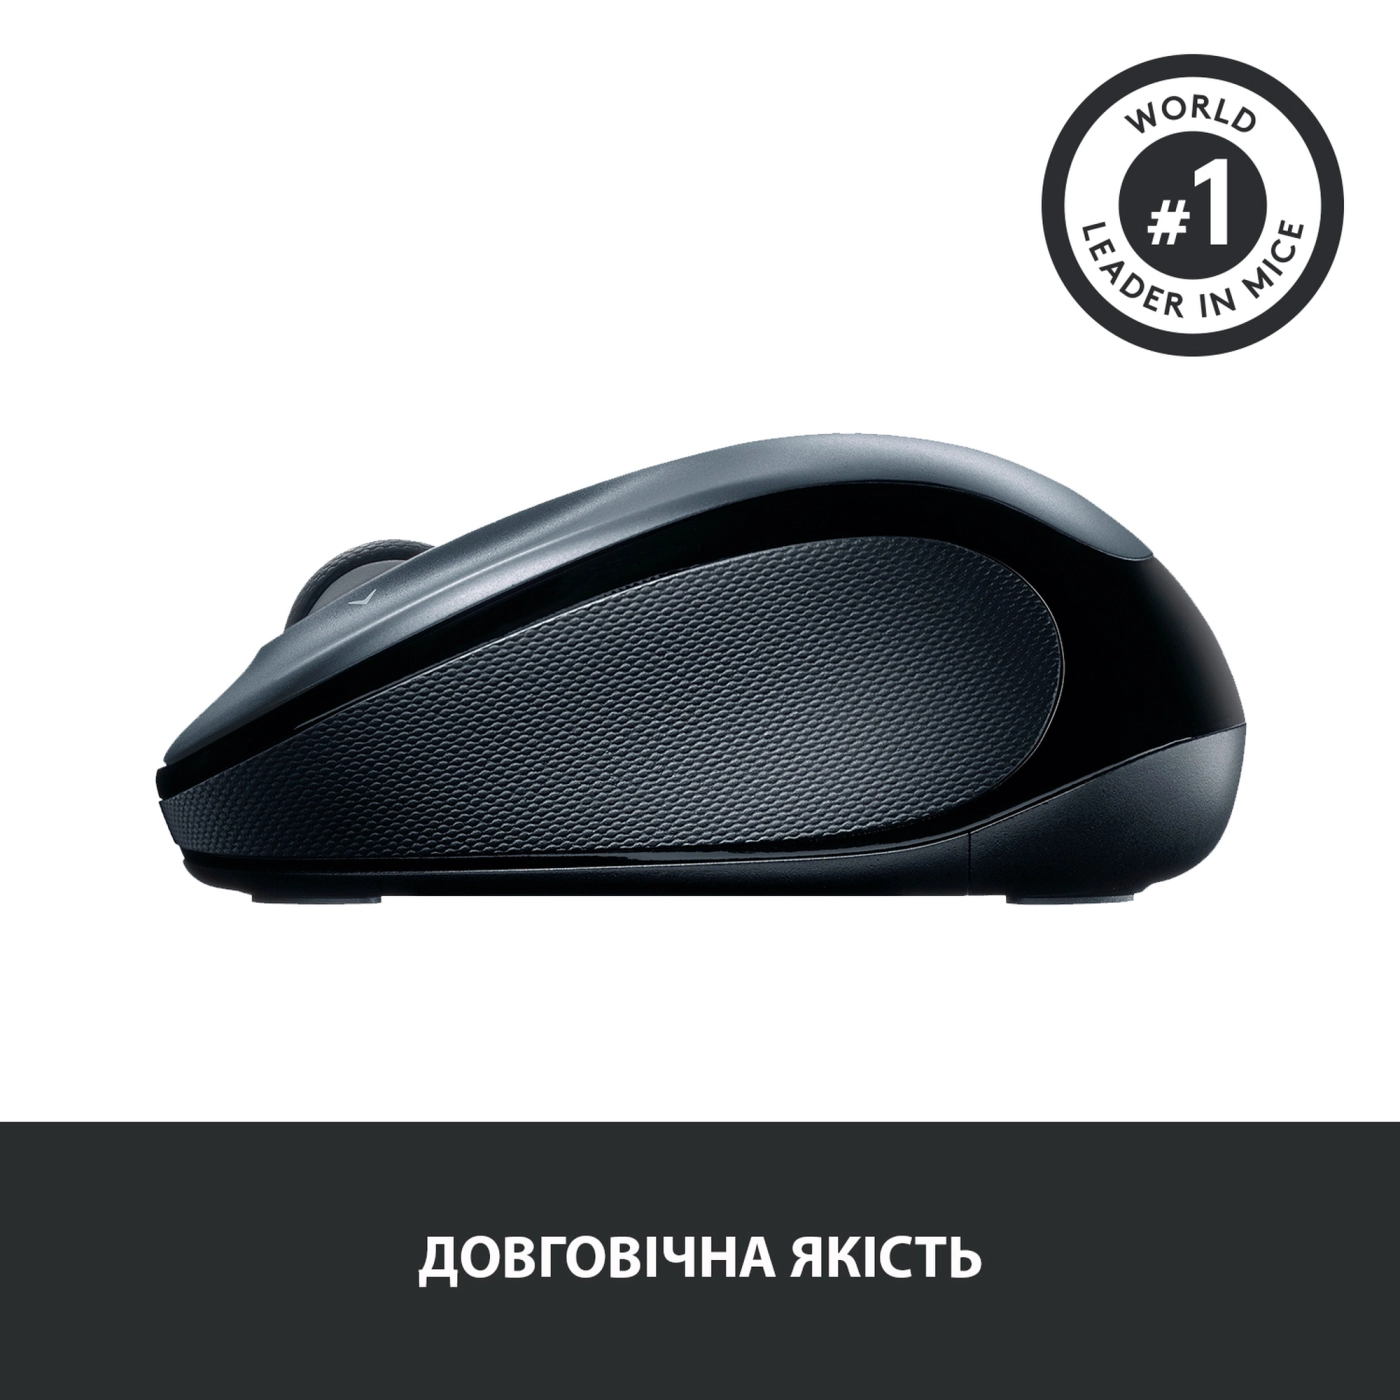 Купить Мышь Logitech Wireless Mouse M325s light-silver 2.4GHZ (910-006813) - фото 5